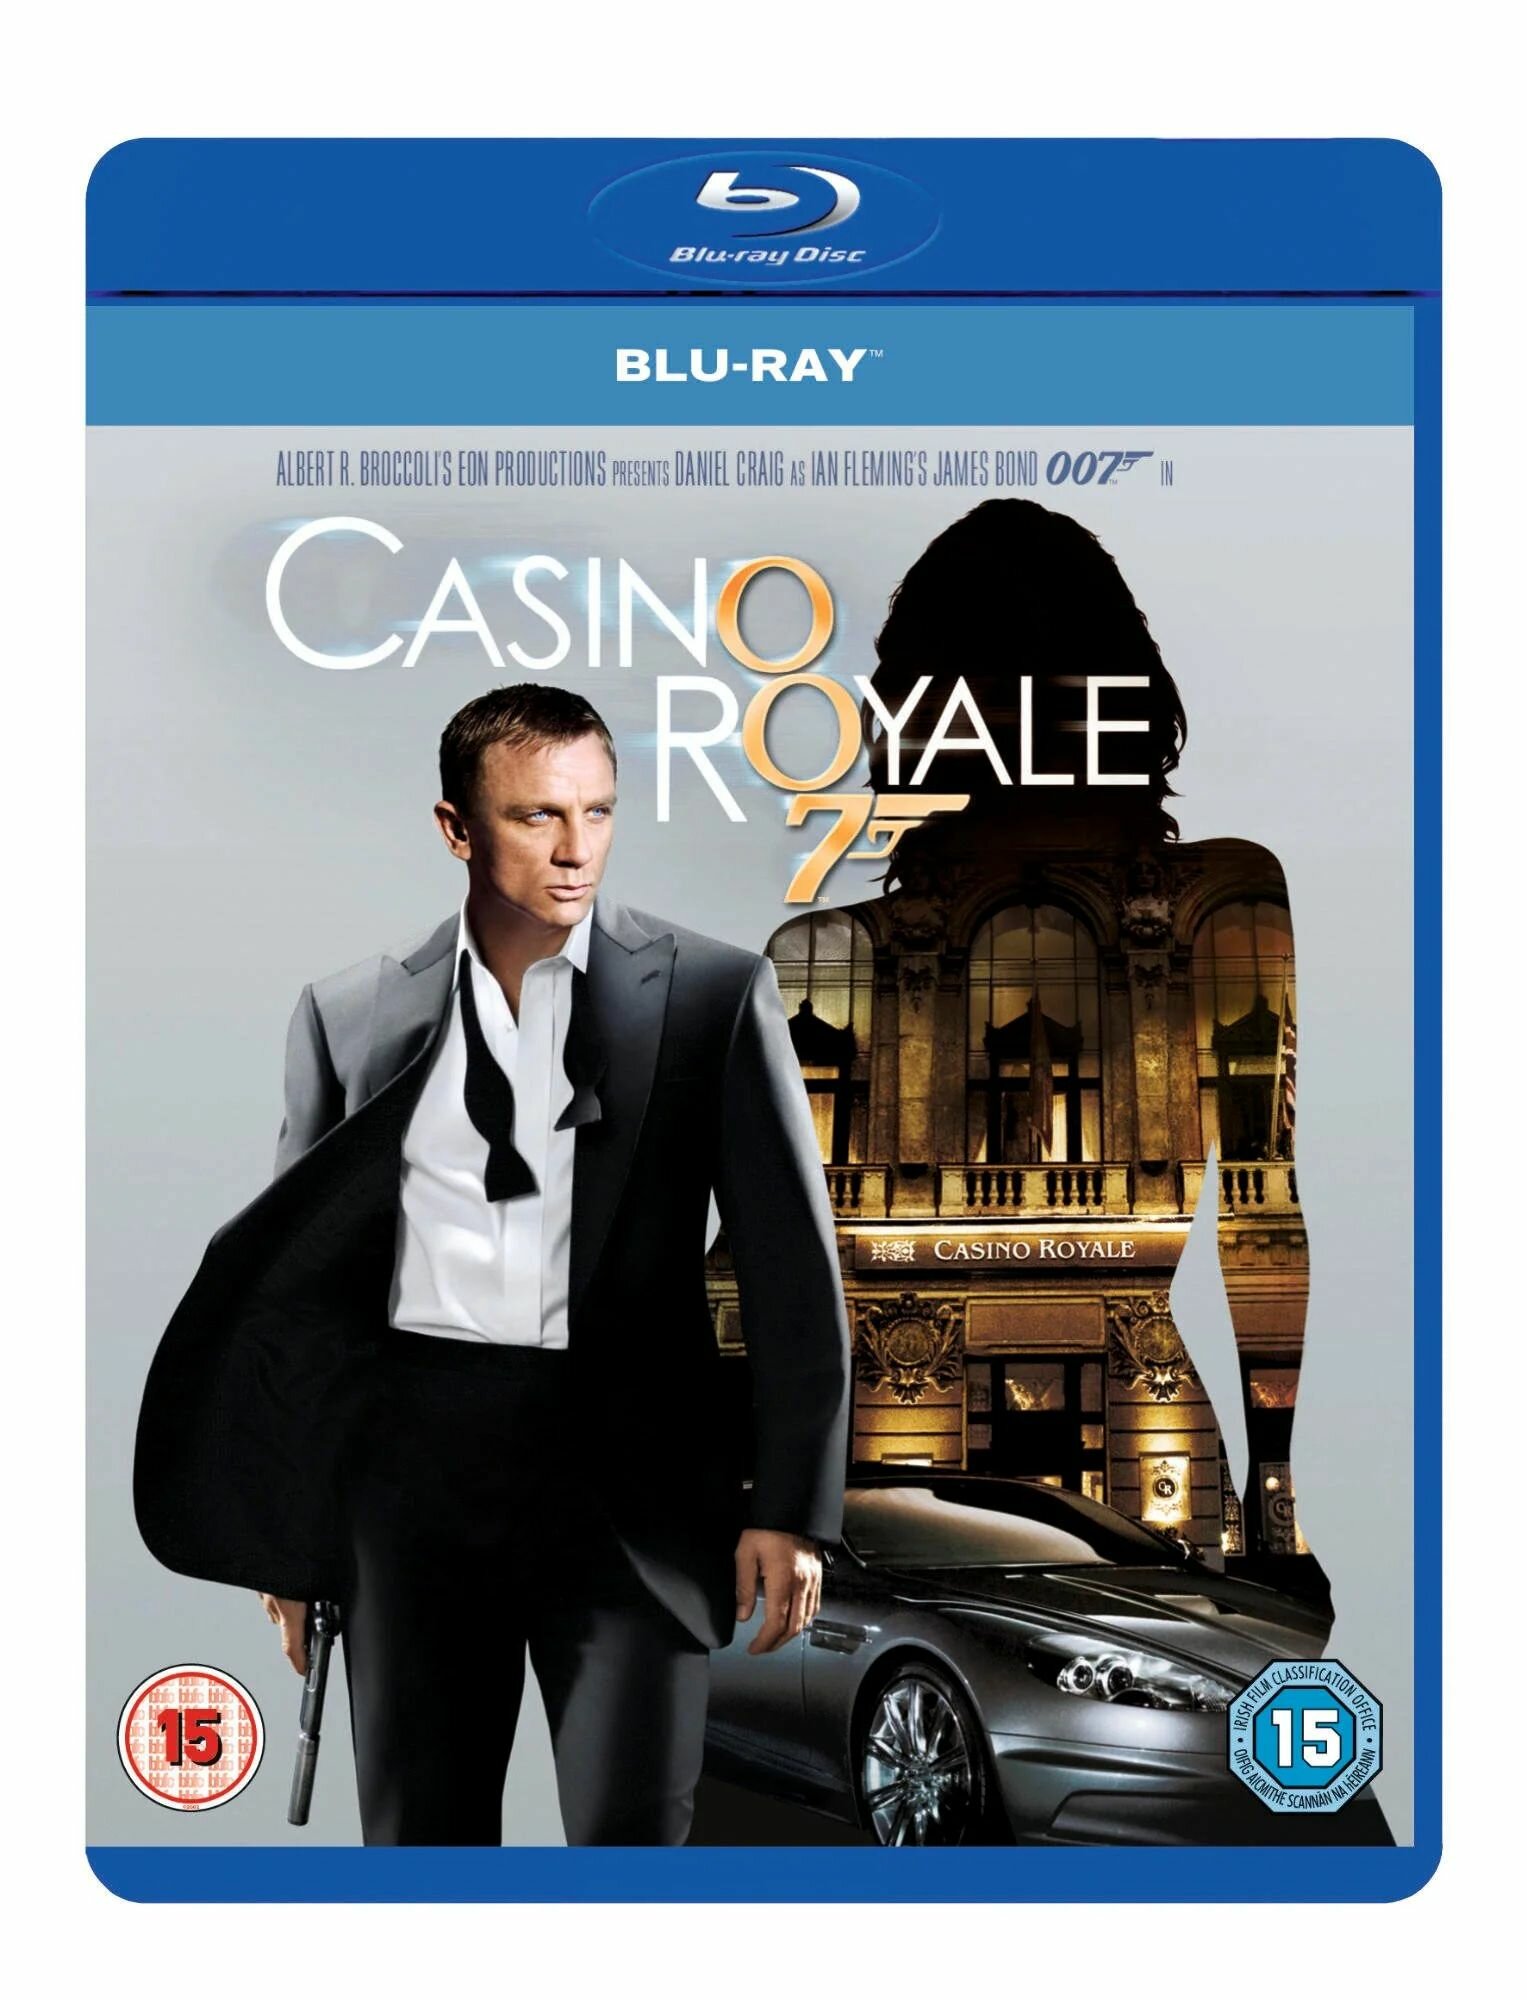 007 Казино Рояль(Джеймс Бонд) Blu-ray(блю рей) Специальное 2-х дисковое издание(отличное качество)